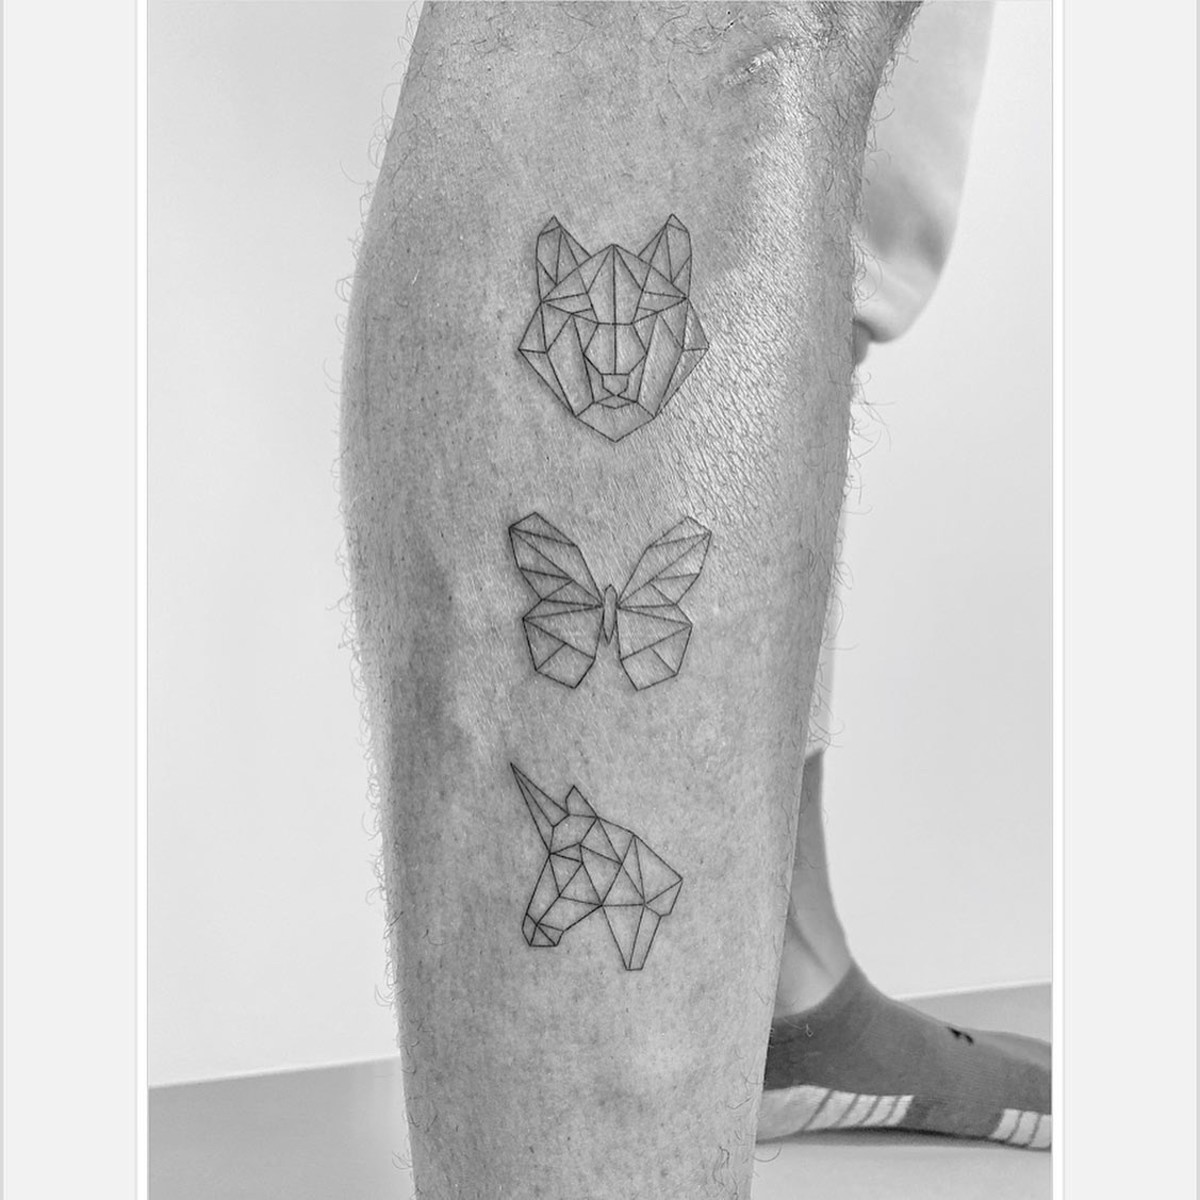 Nejnovější tetování Stepha Curryho